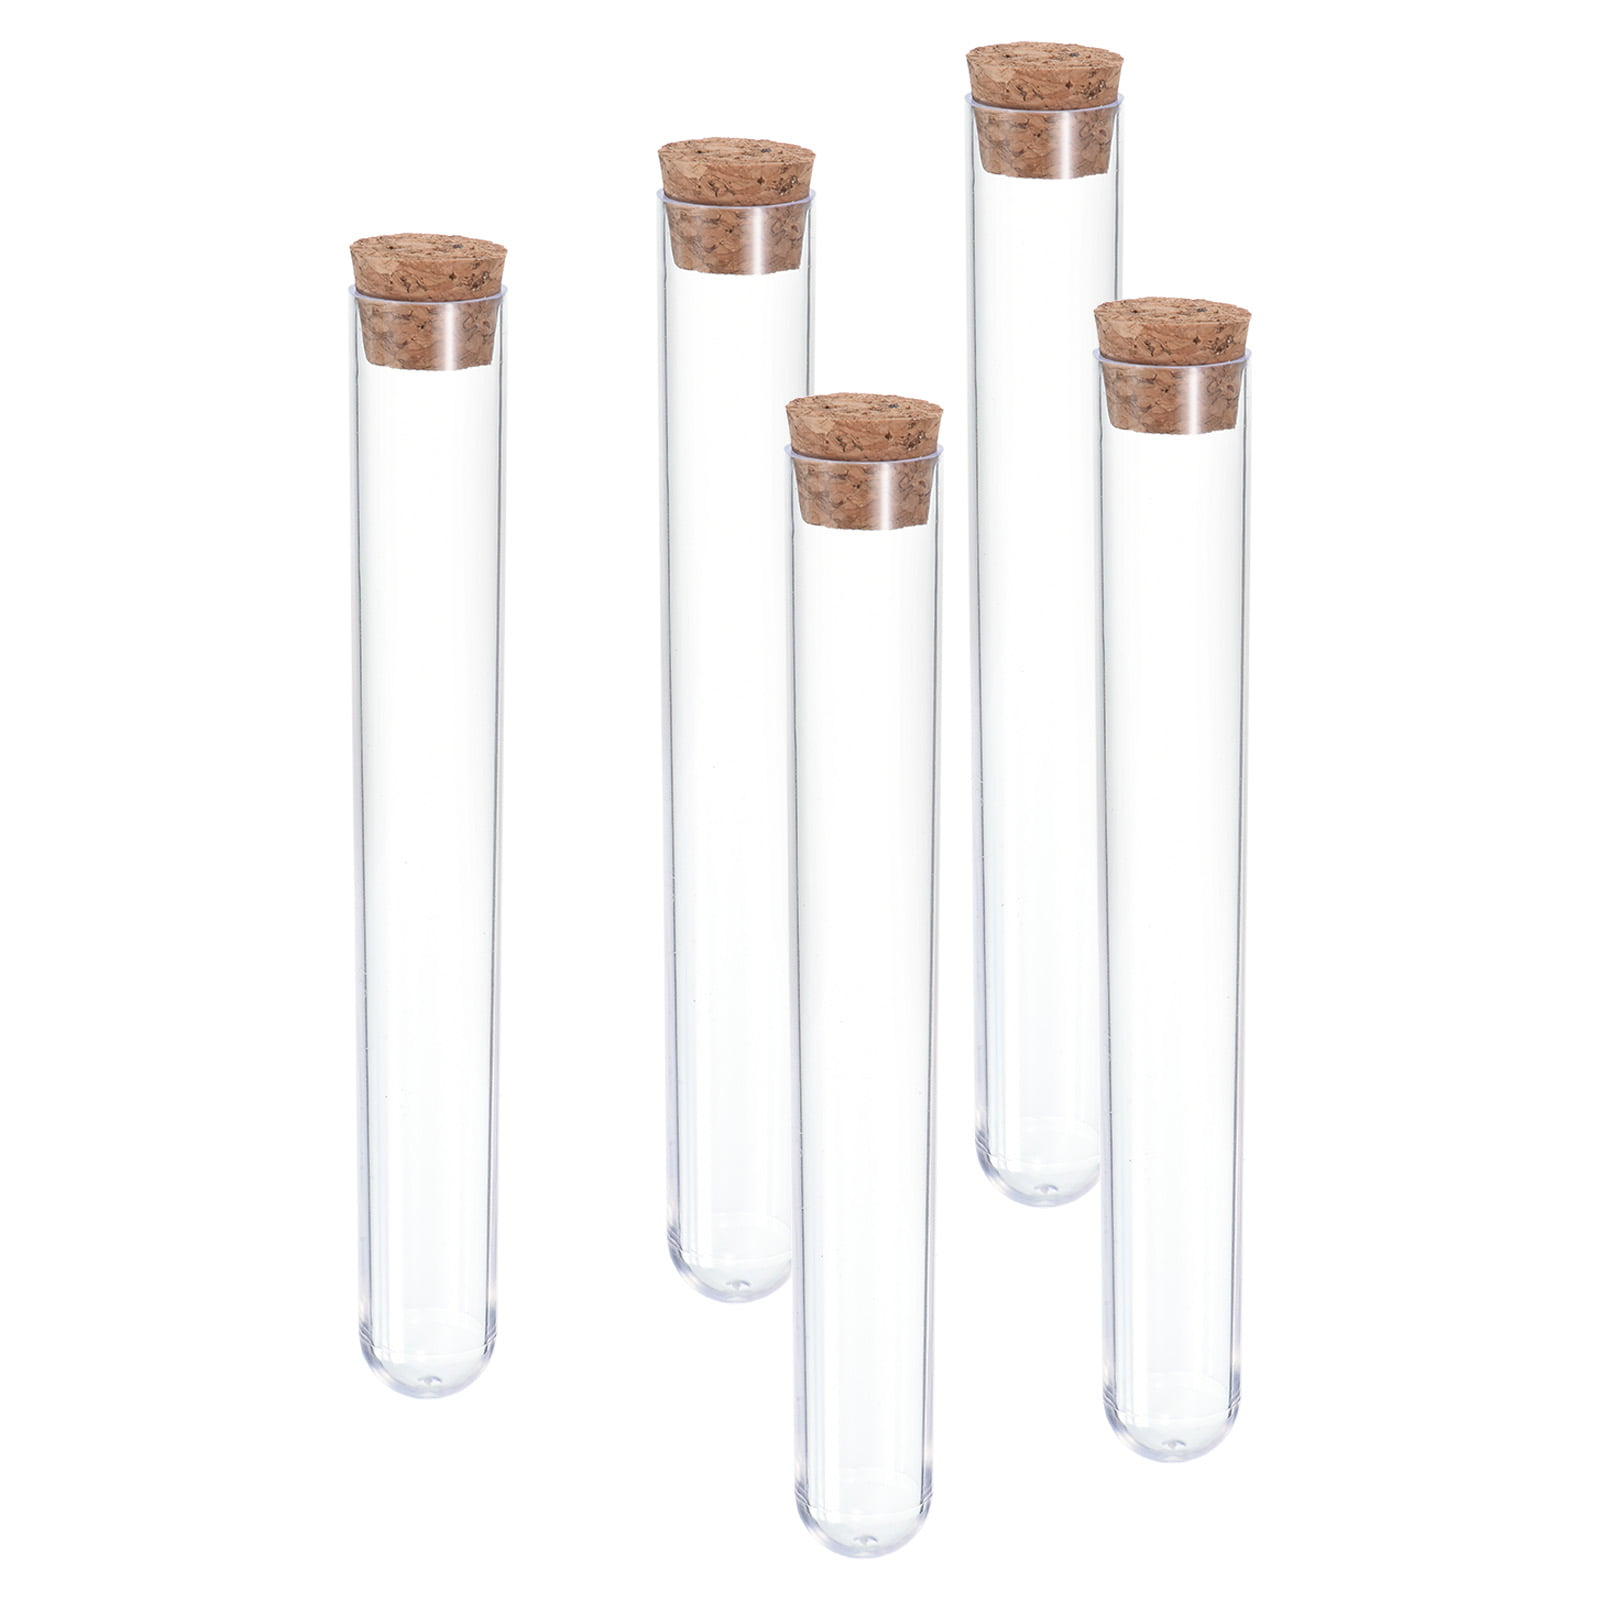 Uxcell 30mL Plastic Test Tubes, 40 Pack Frozen Test Tube Vial